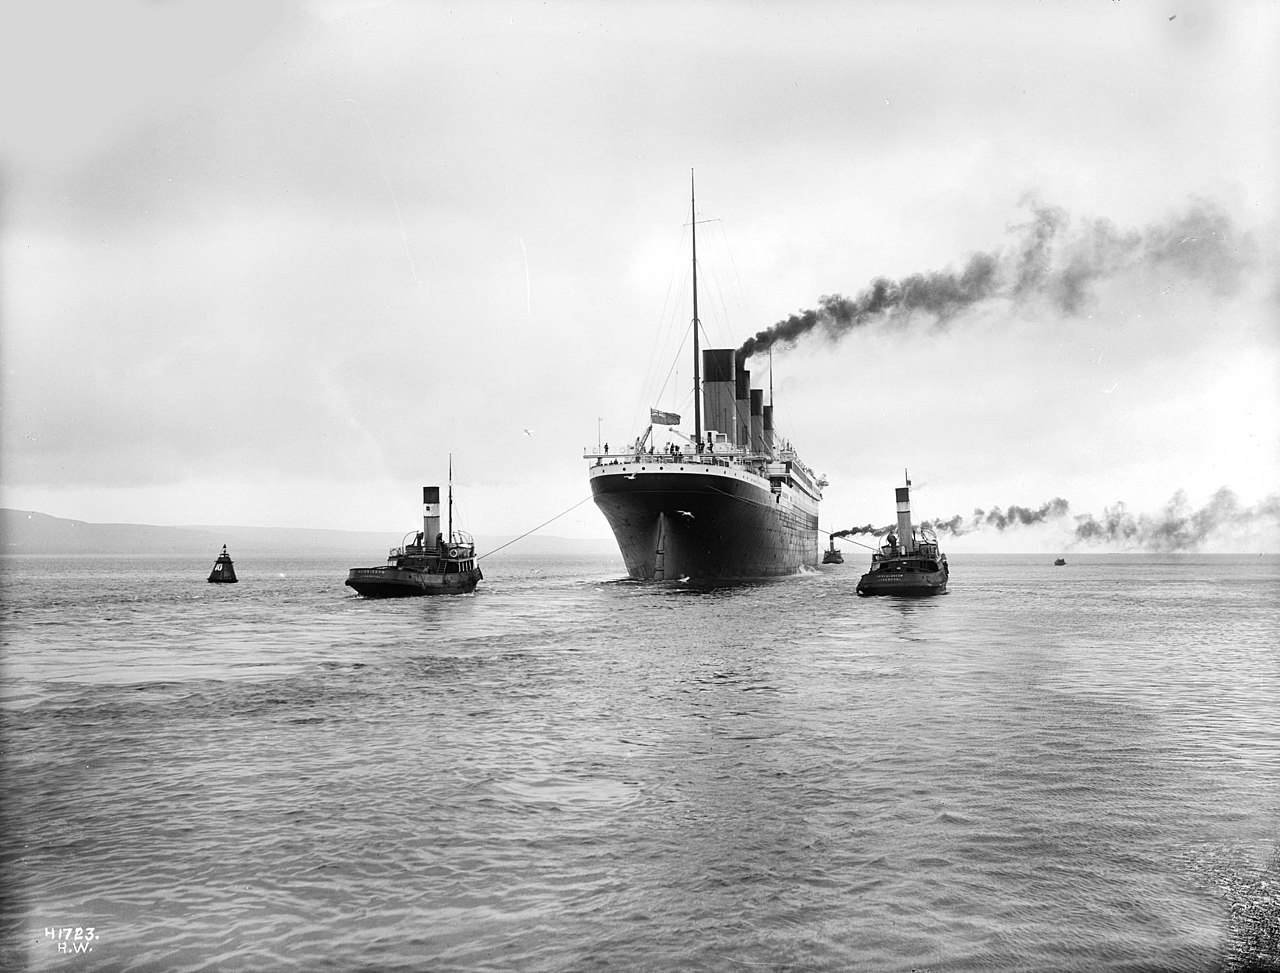 Rahasia gelap dan beberapa fakta yang tidak banyak diketahui di balik bencana Titanic 3